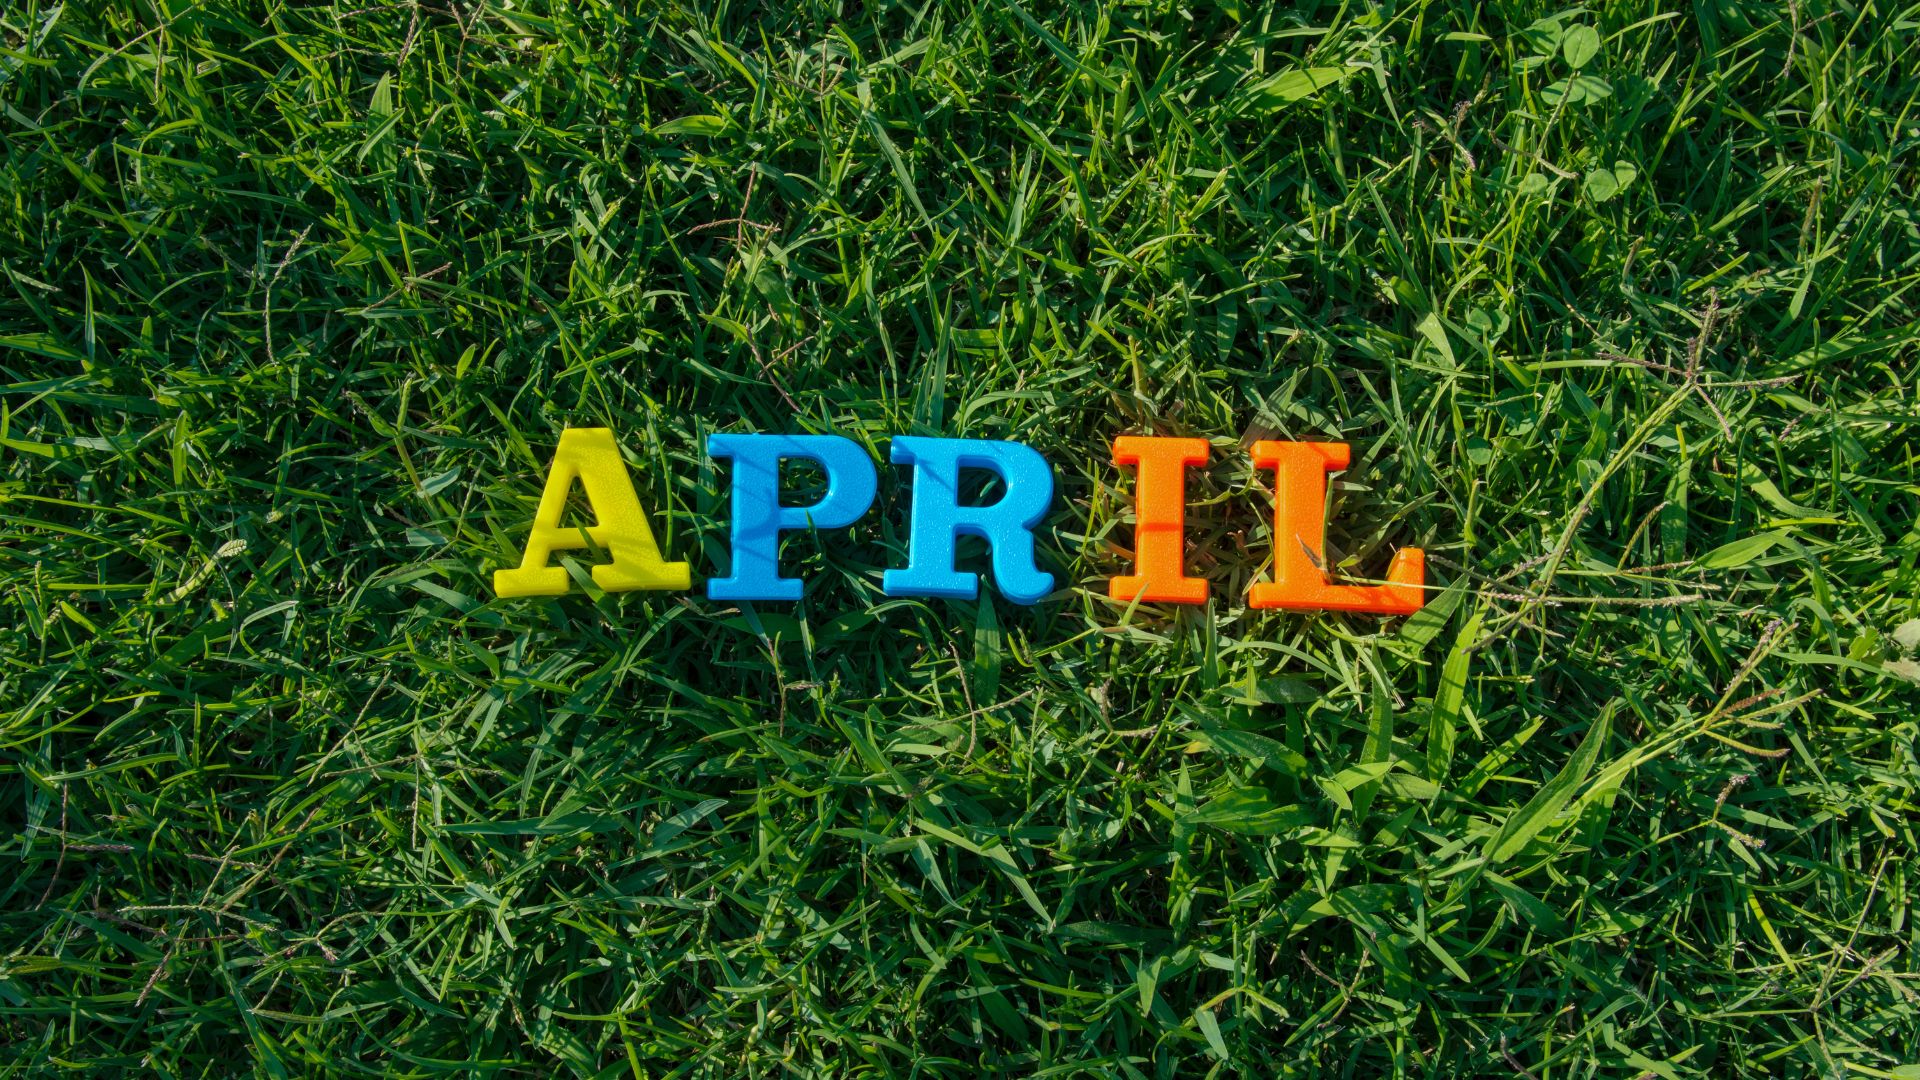 Palavra APRIL, que significa abril, posicionada em cima de um gramado verde